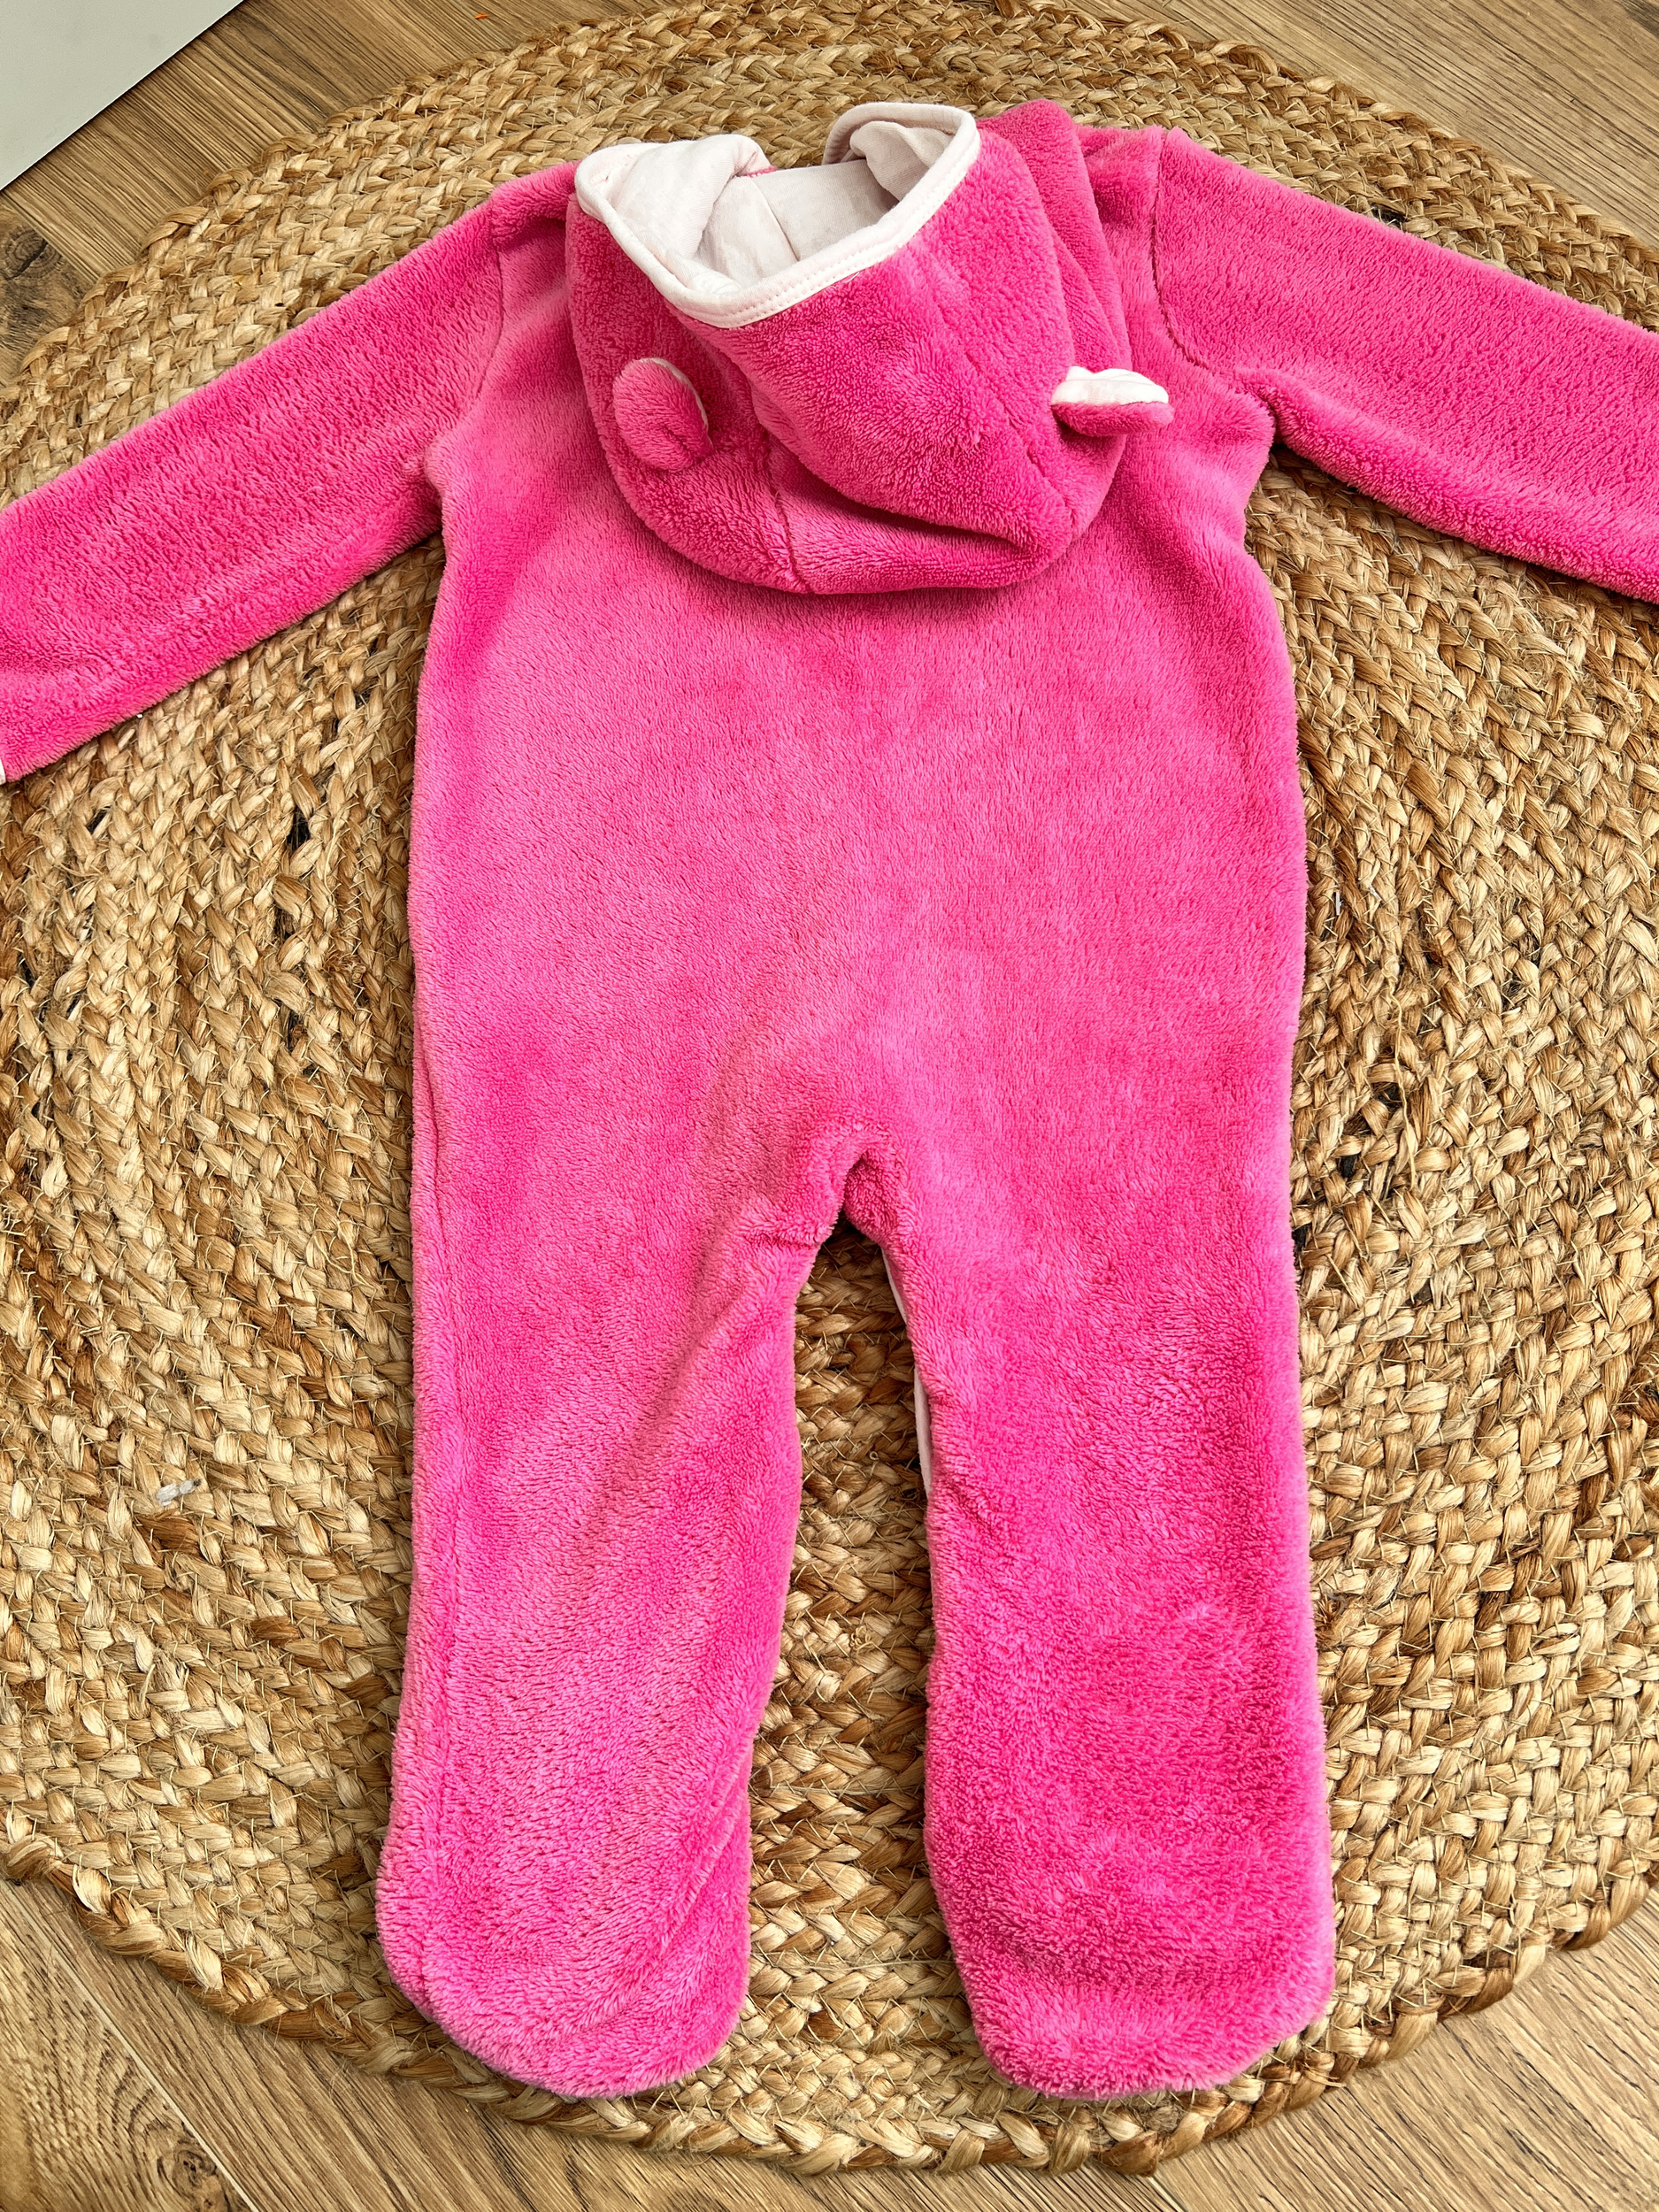 Combinaison polaire / Surpyjama rose - Tissaia - 18 mois - Fille/Pyjamas -  Ope - Occasions pour enfants